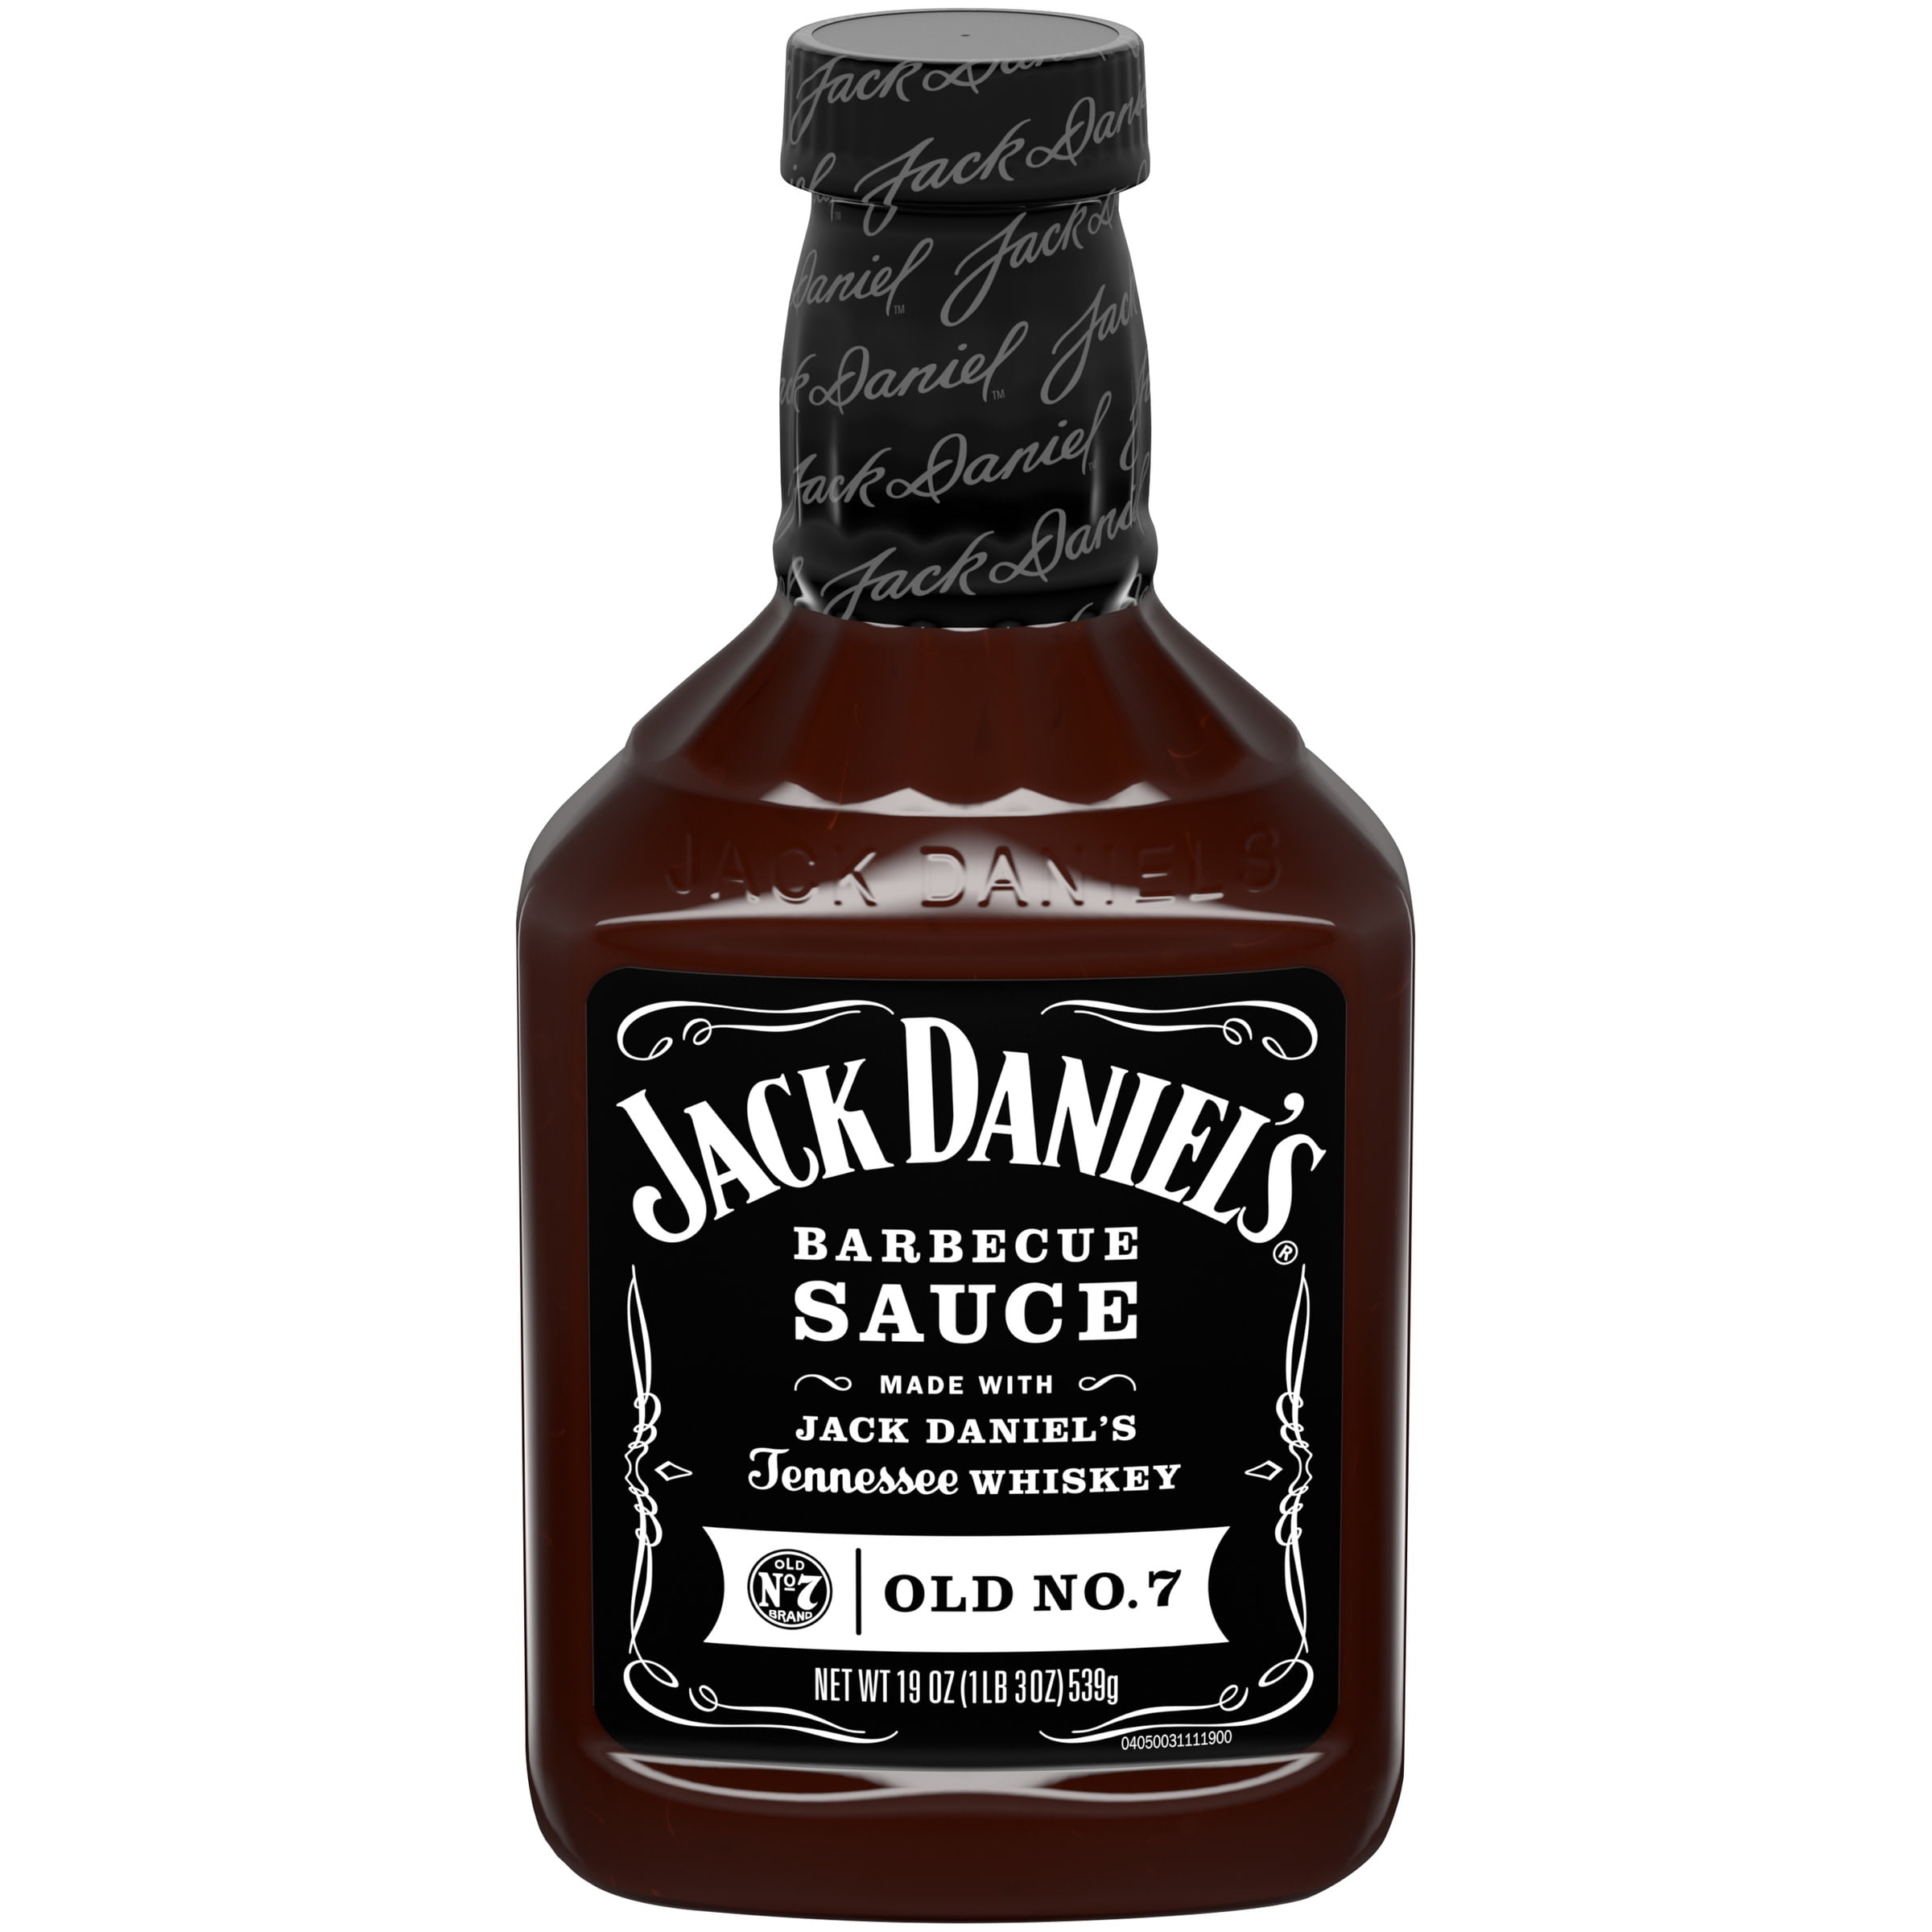 Verslagen vleet Voorzichtigheid Jack Daniel's Old No. 7 Barbecue Sauce, 19 oz Bottle - Walmart.com